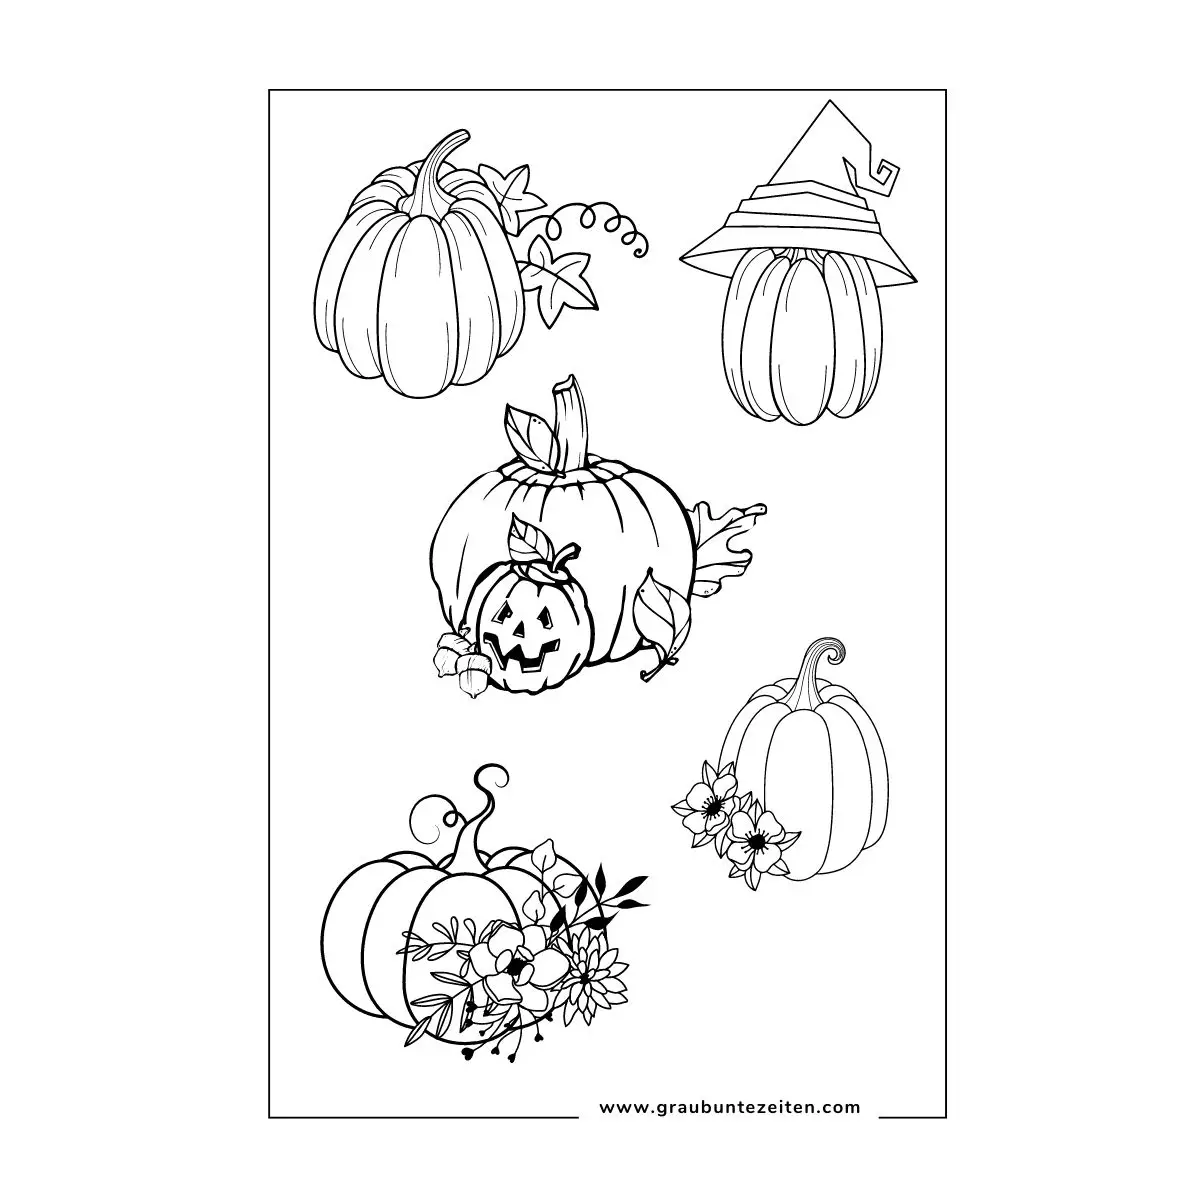 Ausmalbild Herbst mit fünf Kürbissen die unterschiedlich geschmückt sind.